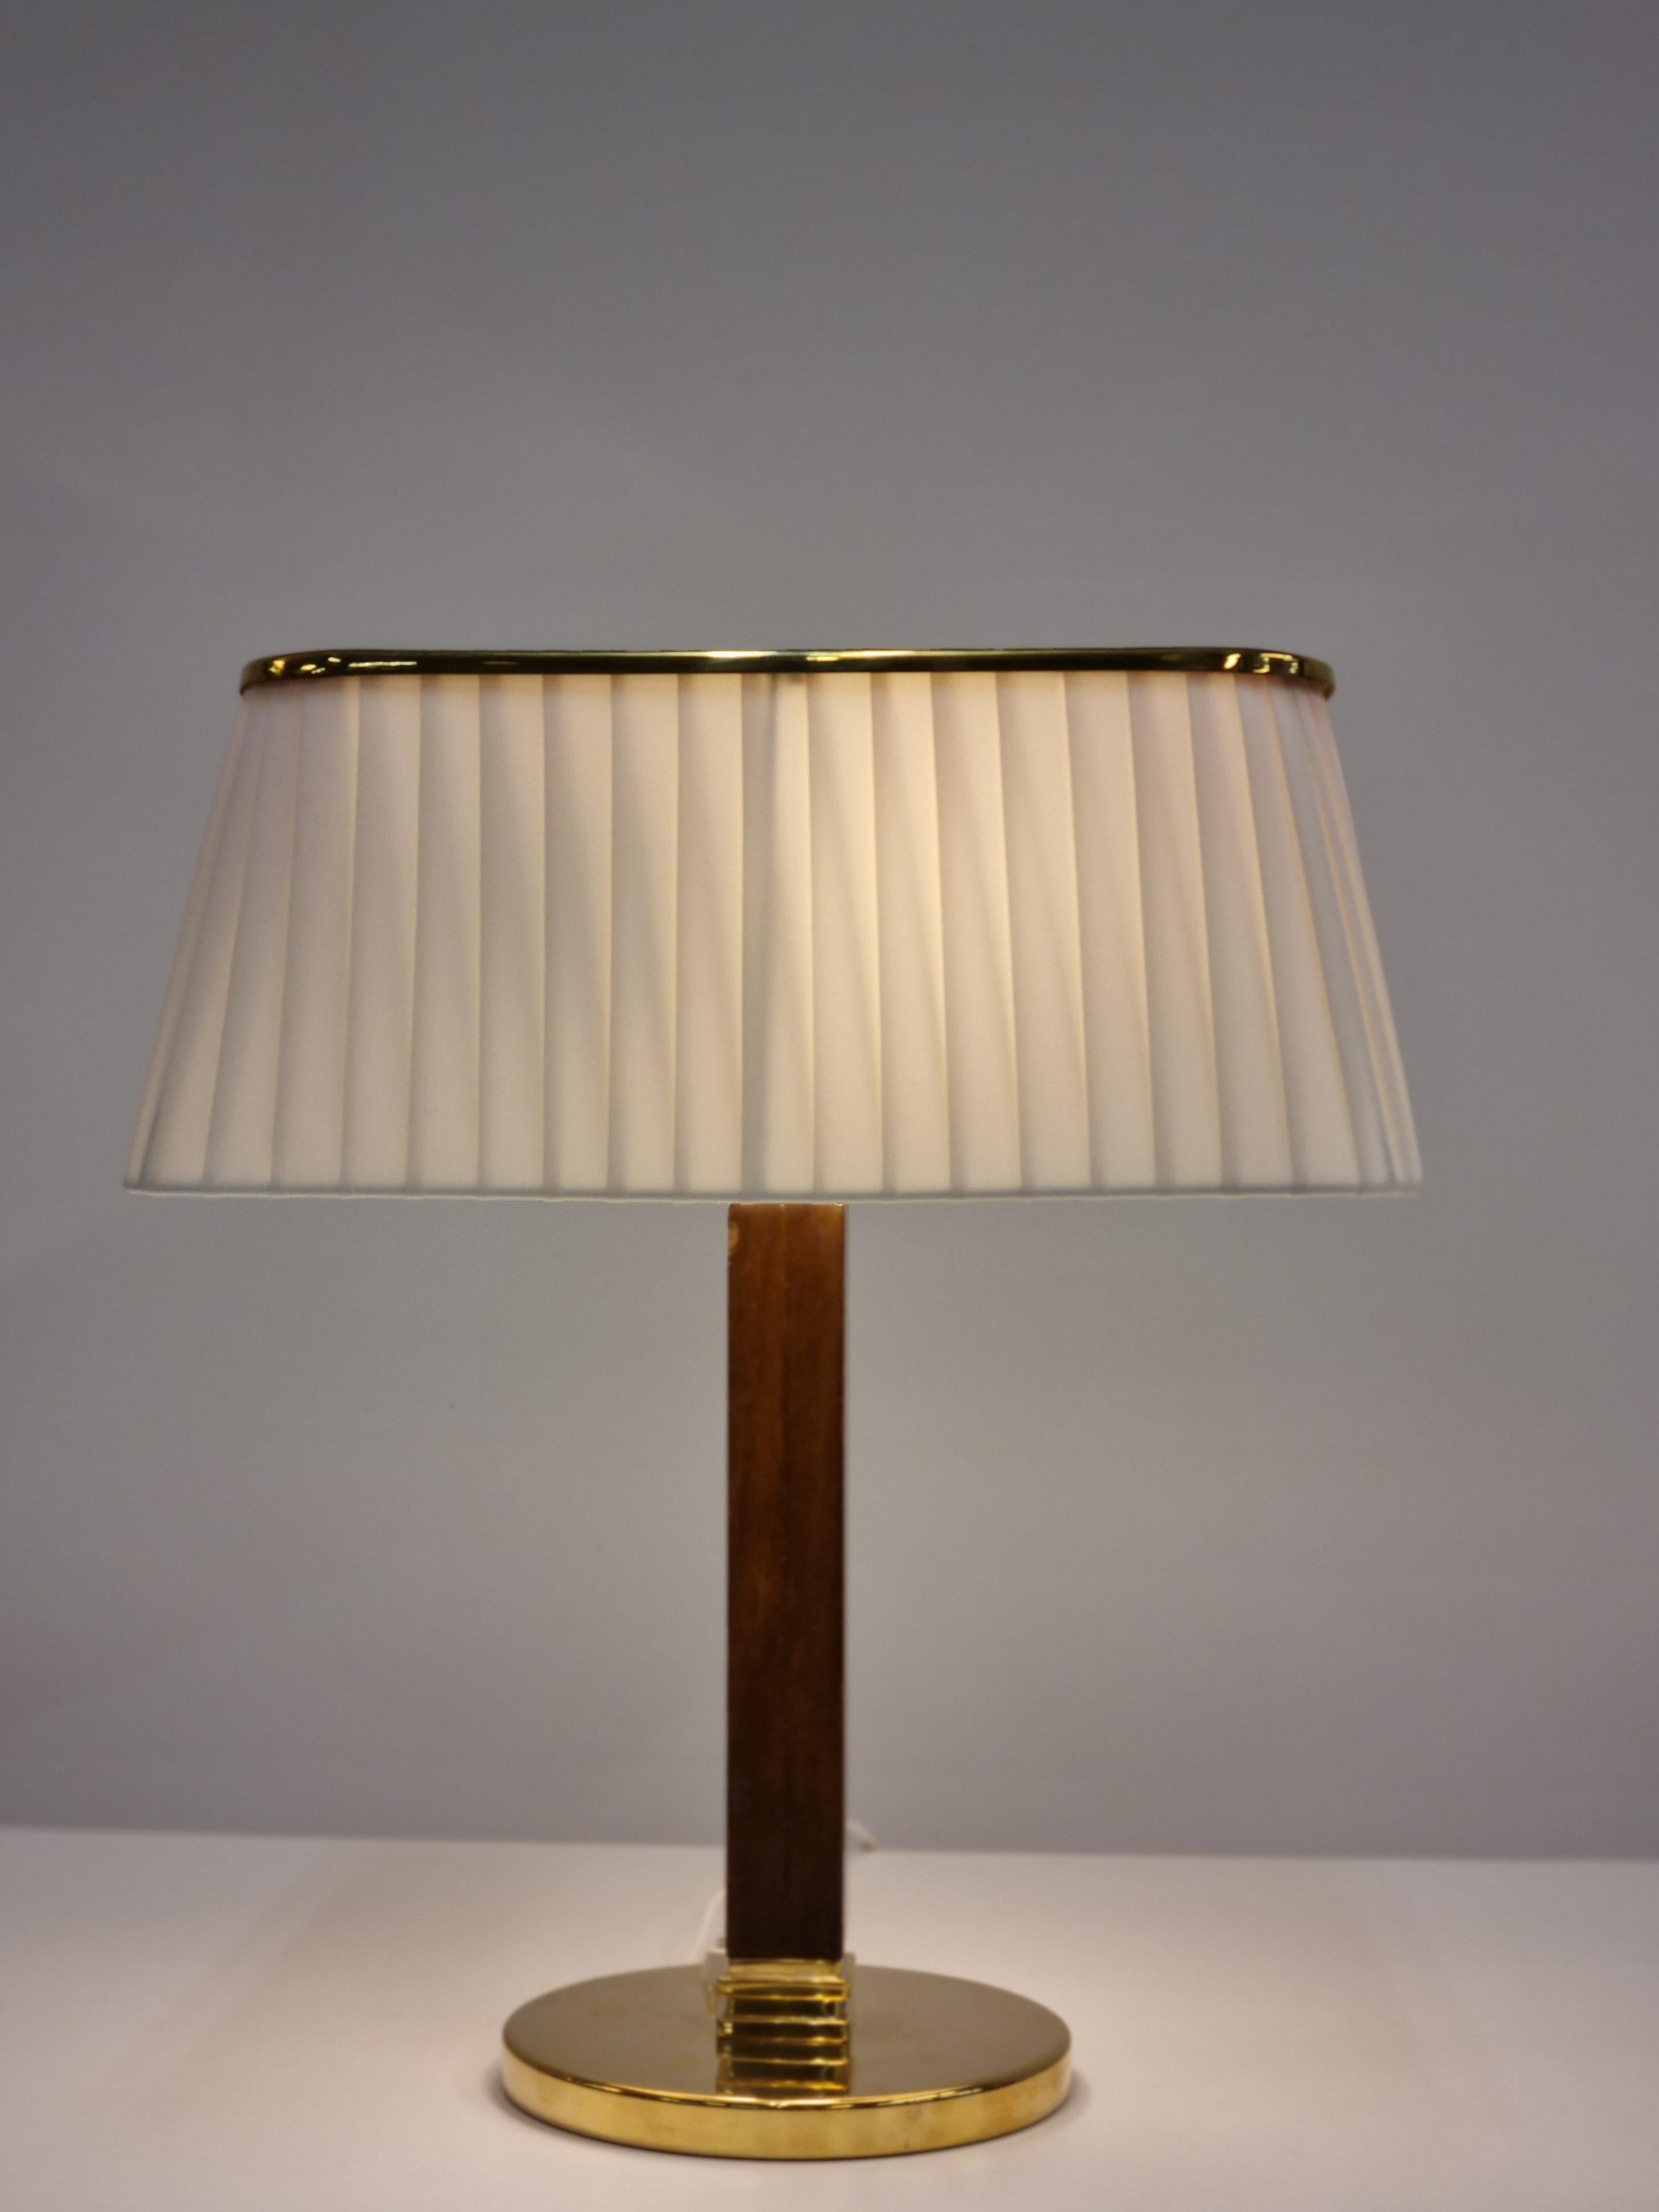 Cette lampe de table modèle 5066 par Paavo Tynell pour Taito Oy des années 1950 est un classique. Il possède un pied rond en laiton, un pied en bois dur et un bel abat-jour en textile plissé de couleur claire. La partie supérieure de l'abat-jour en